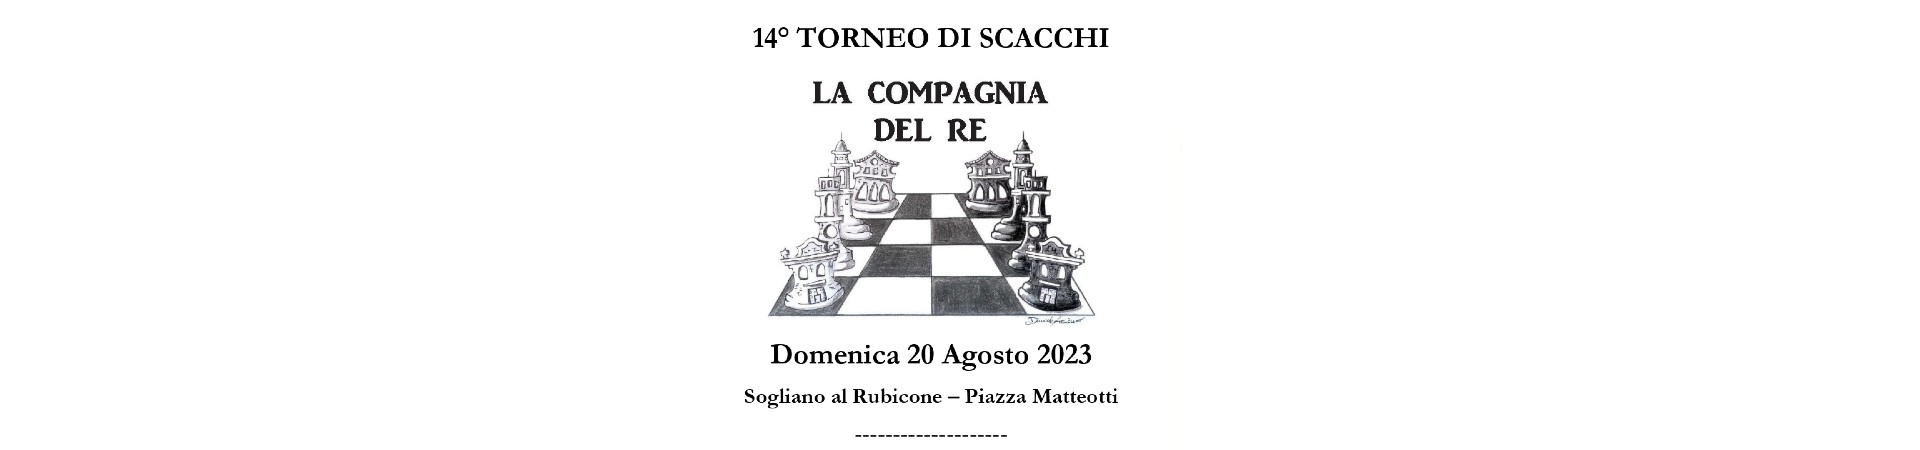 Visit-Sogliano-al-Rubicone-eventi-torneo-Scacchi-Sogliano-2023_banner